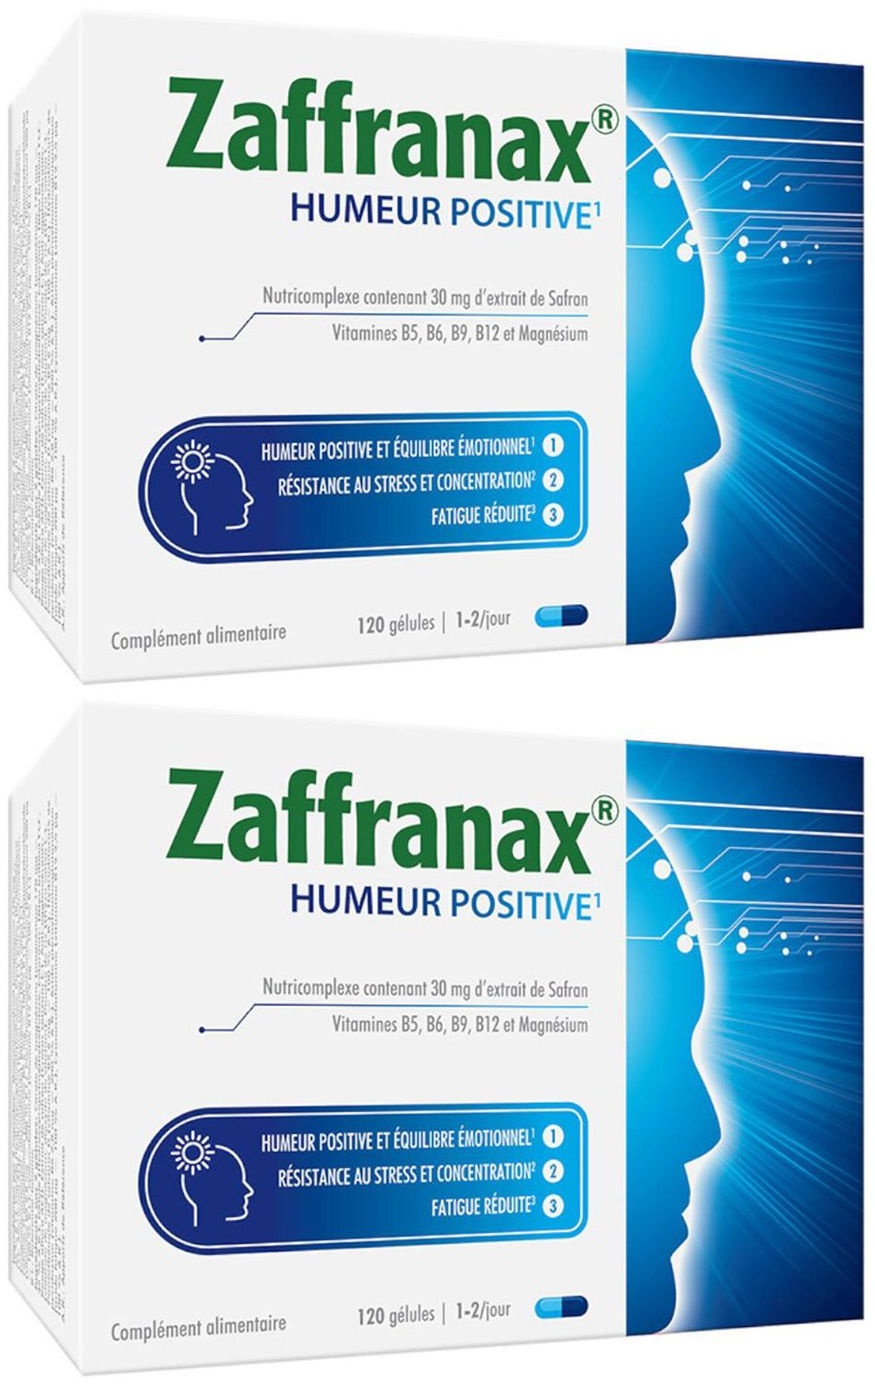 Zaffranax® Positive Stimmung & Emotionales Gleichgewicht